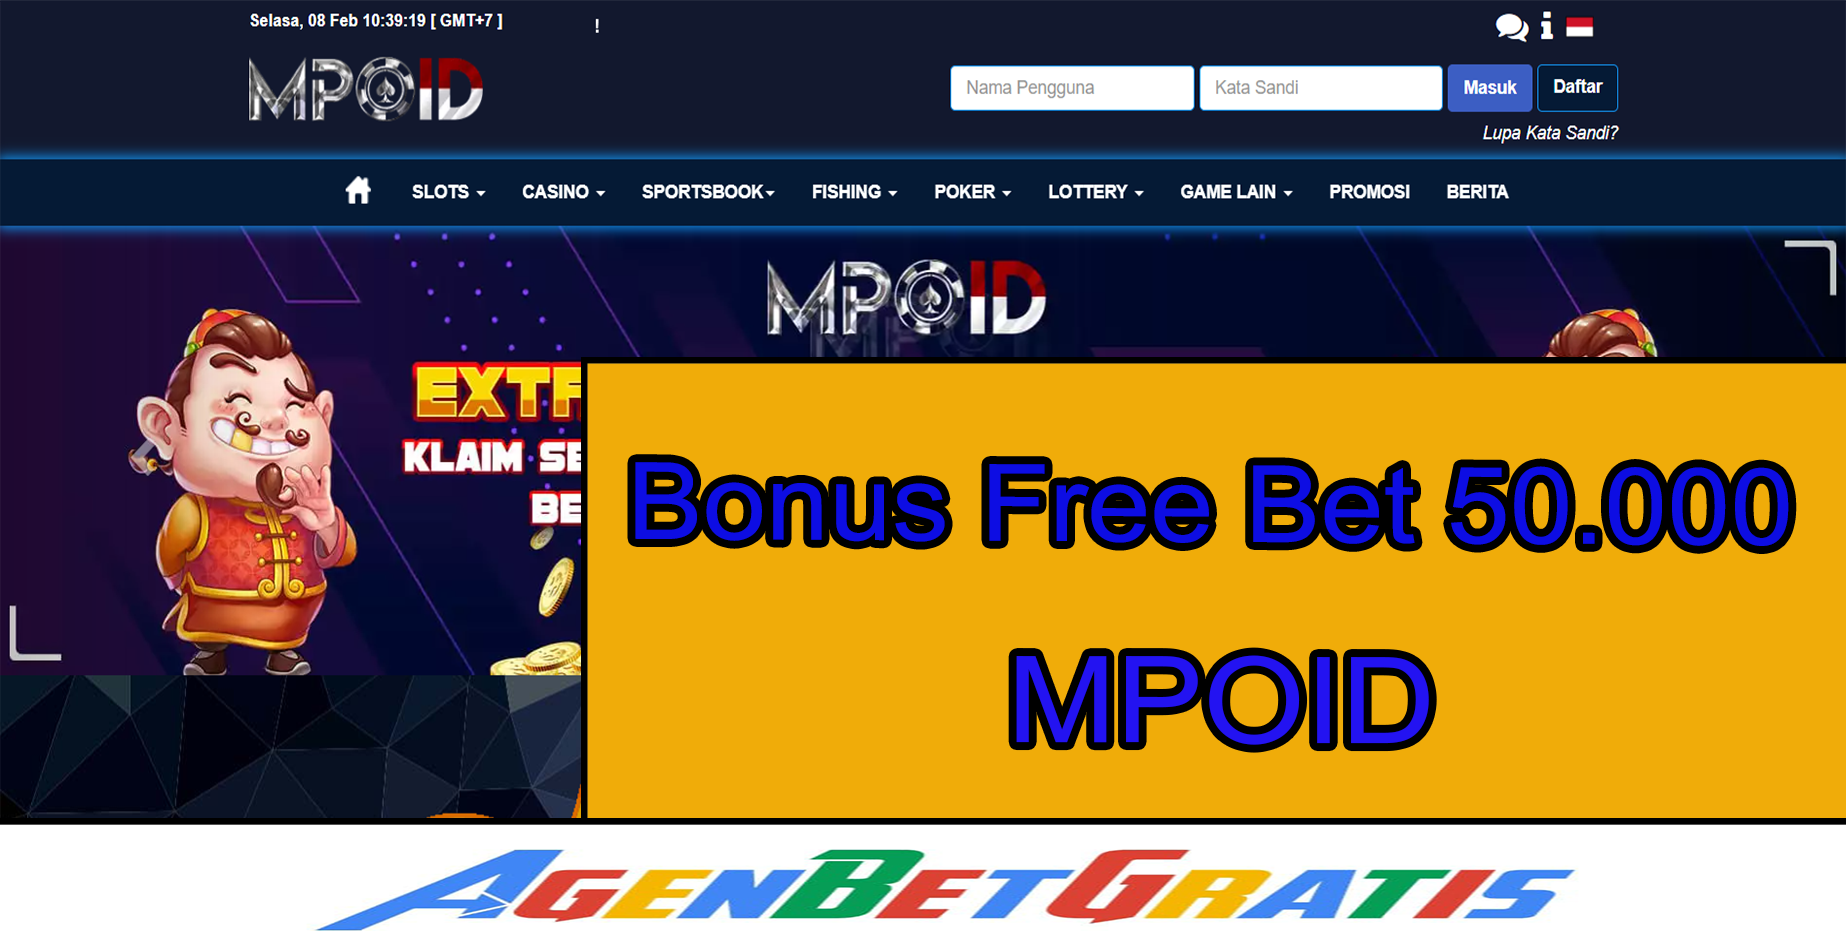 MPOID - Bonus FreeBet 50.000